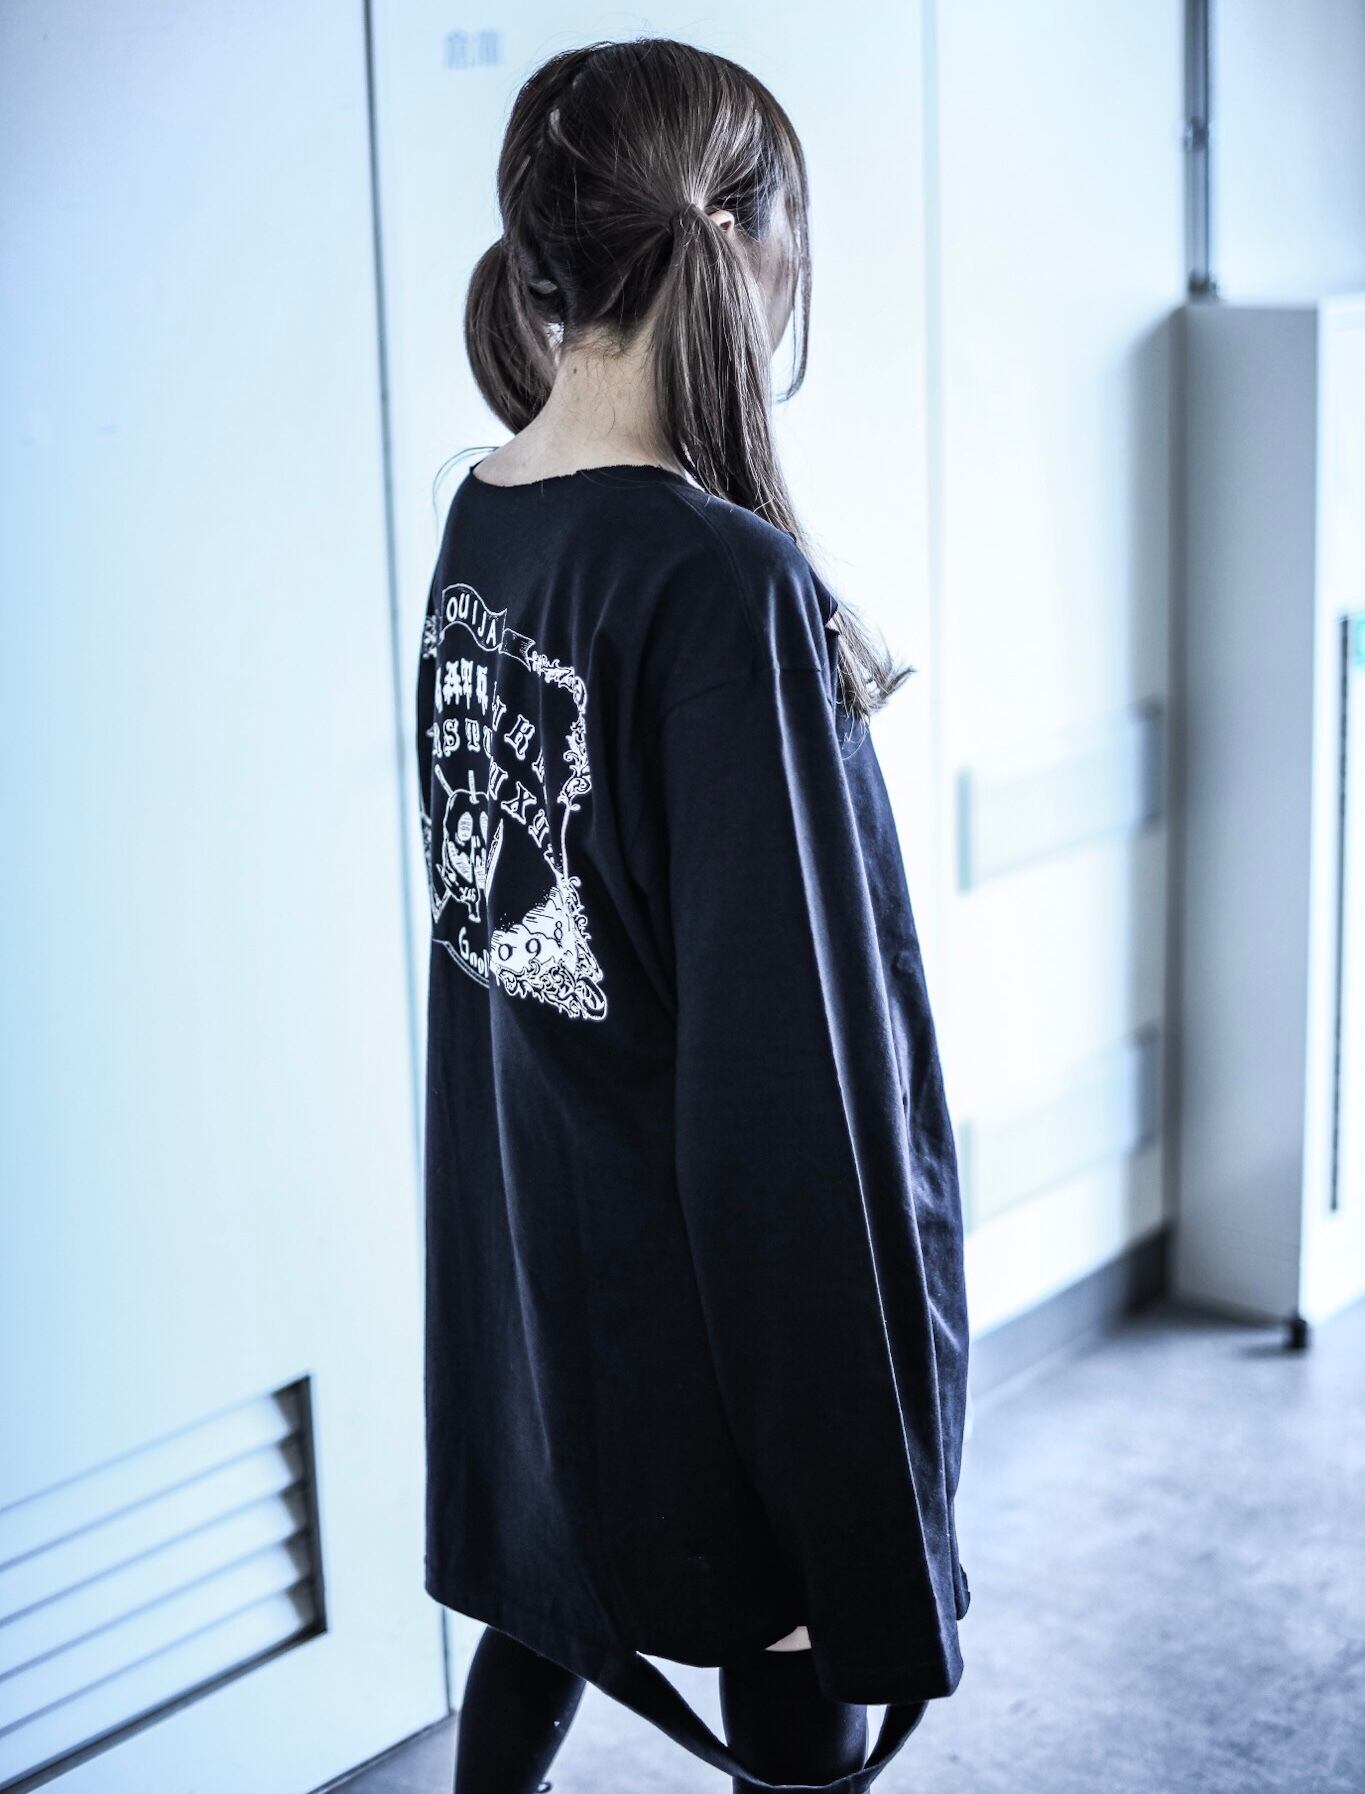 「日向すず× KRY 」 | KRY clothing powered by BASE